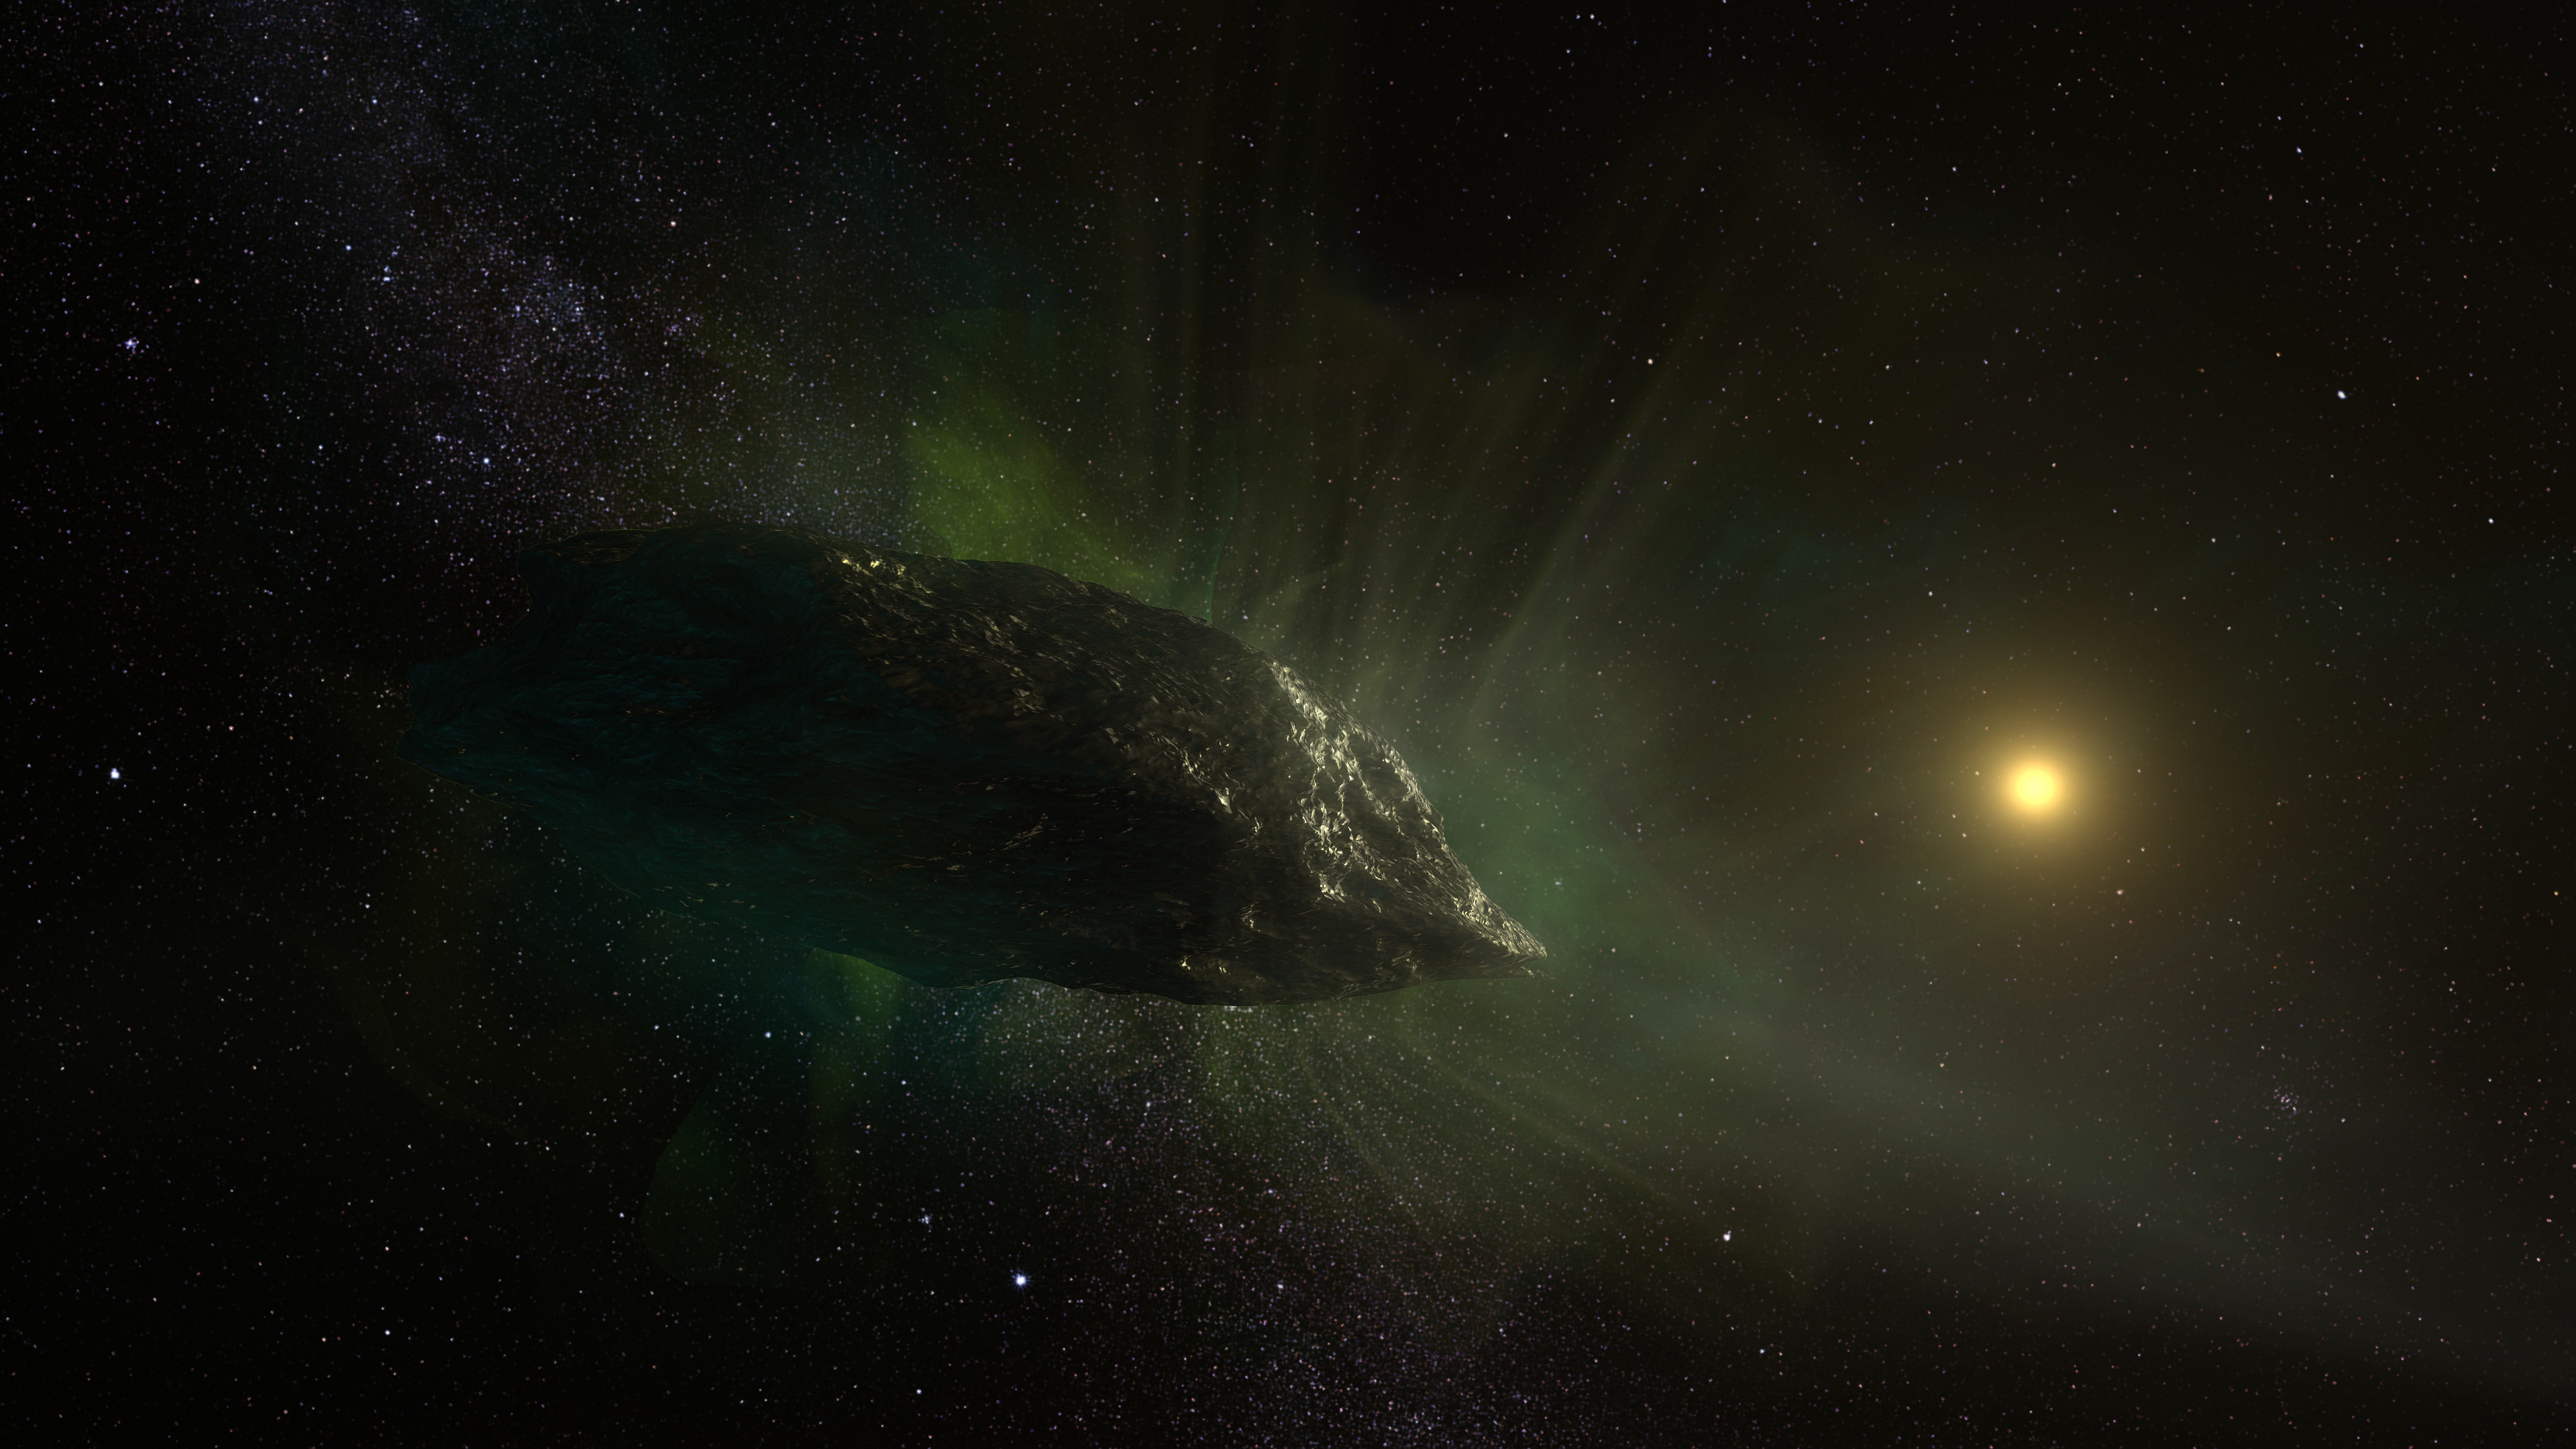 Interstellar Comet 2I/Borisov